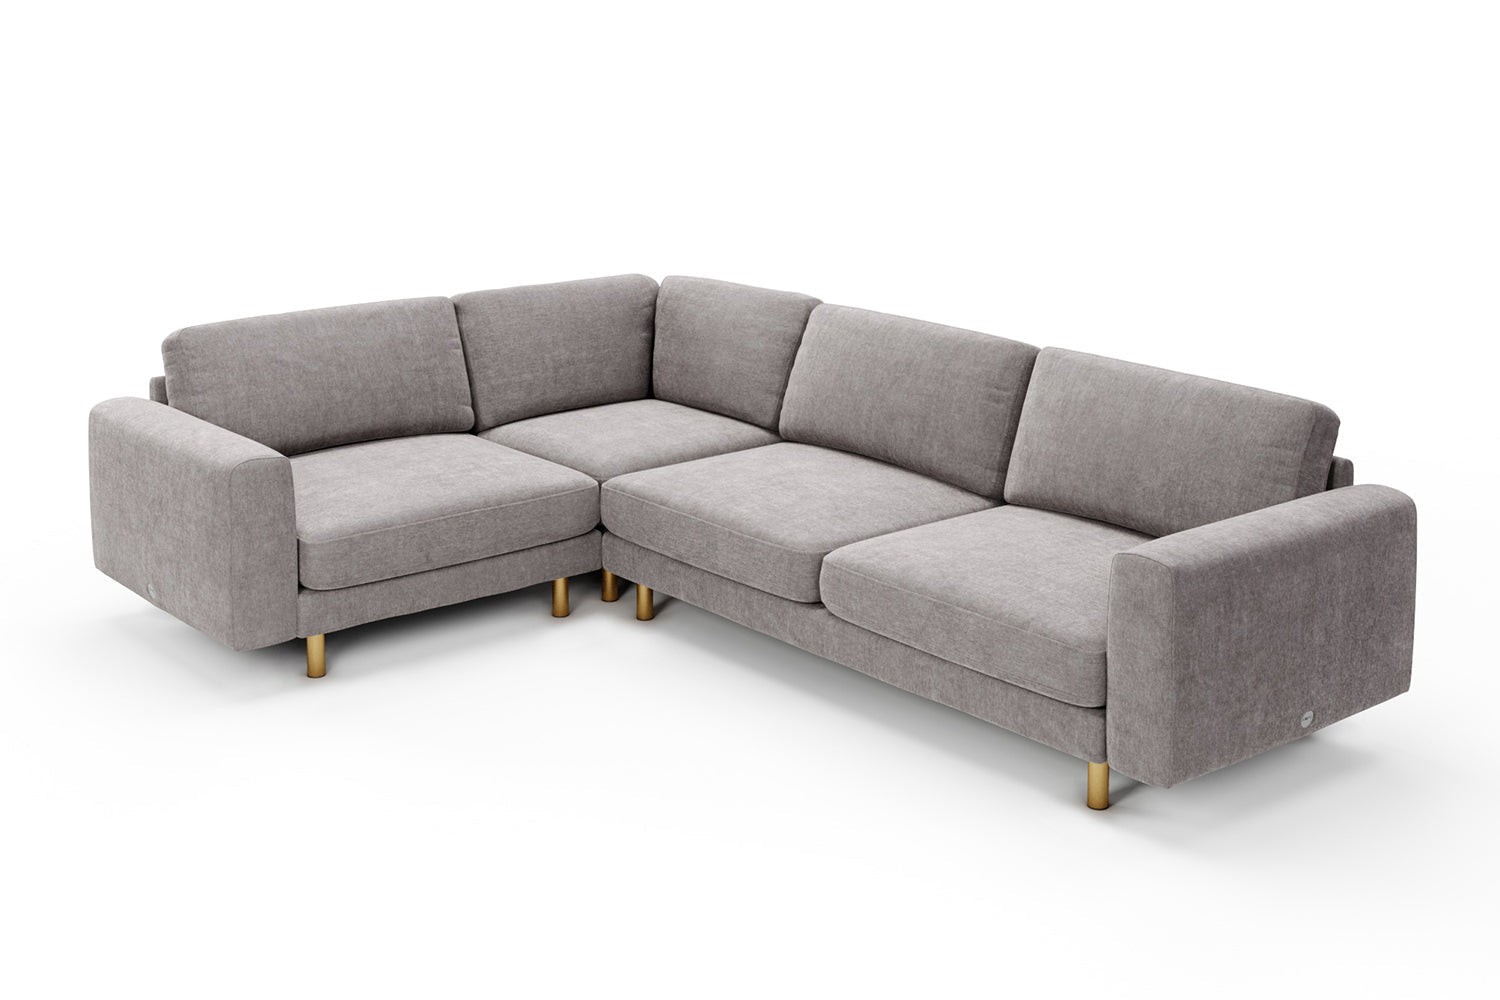 The Big Chill Medium Corner Sofa